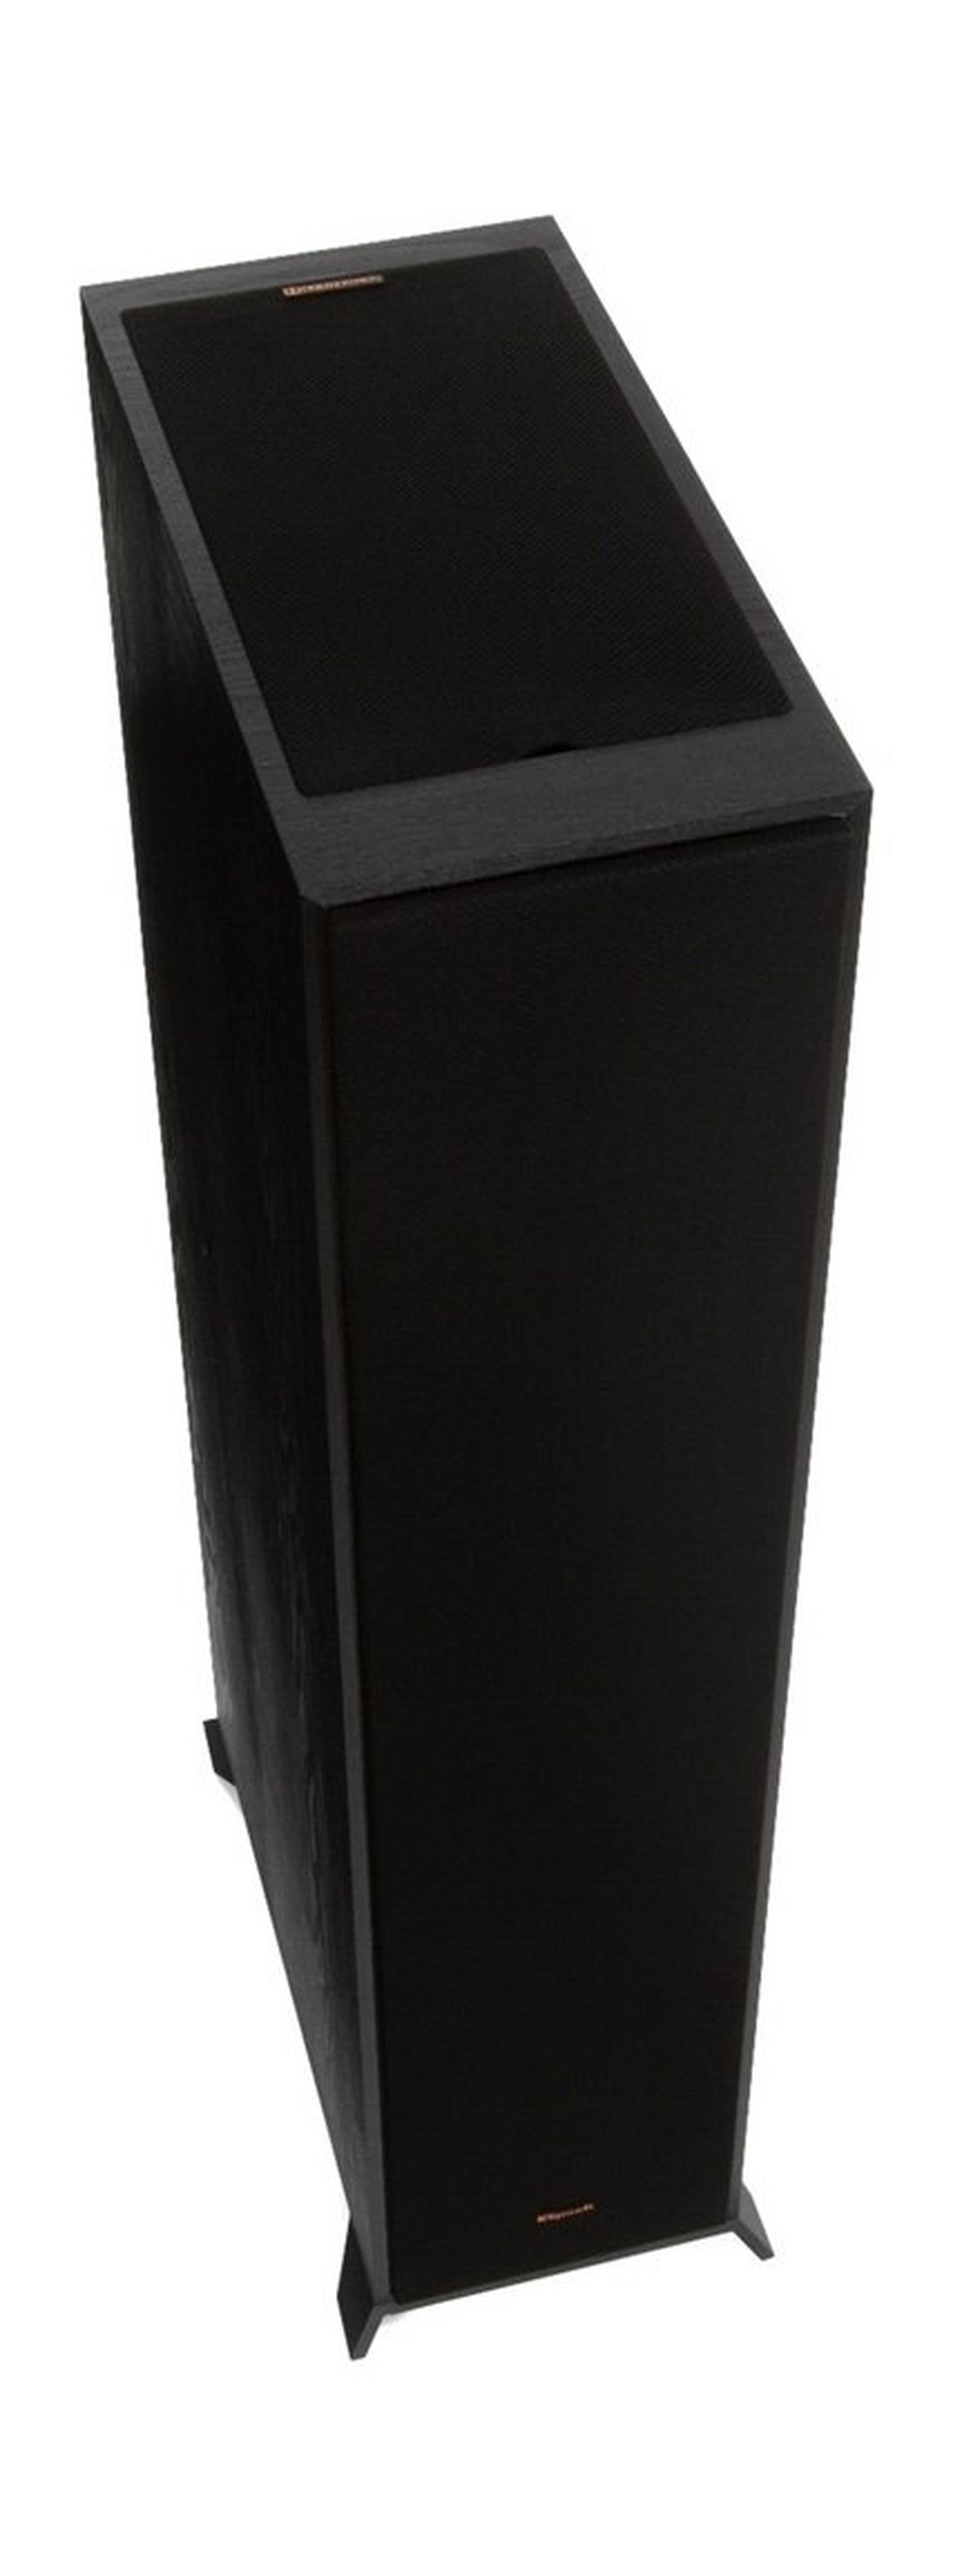 مكبر الصوت العمودي الأرضي من كليبش بتقنية دولبي أتومس - أسود - R-625FA